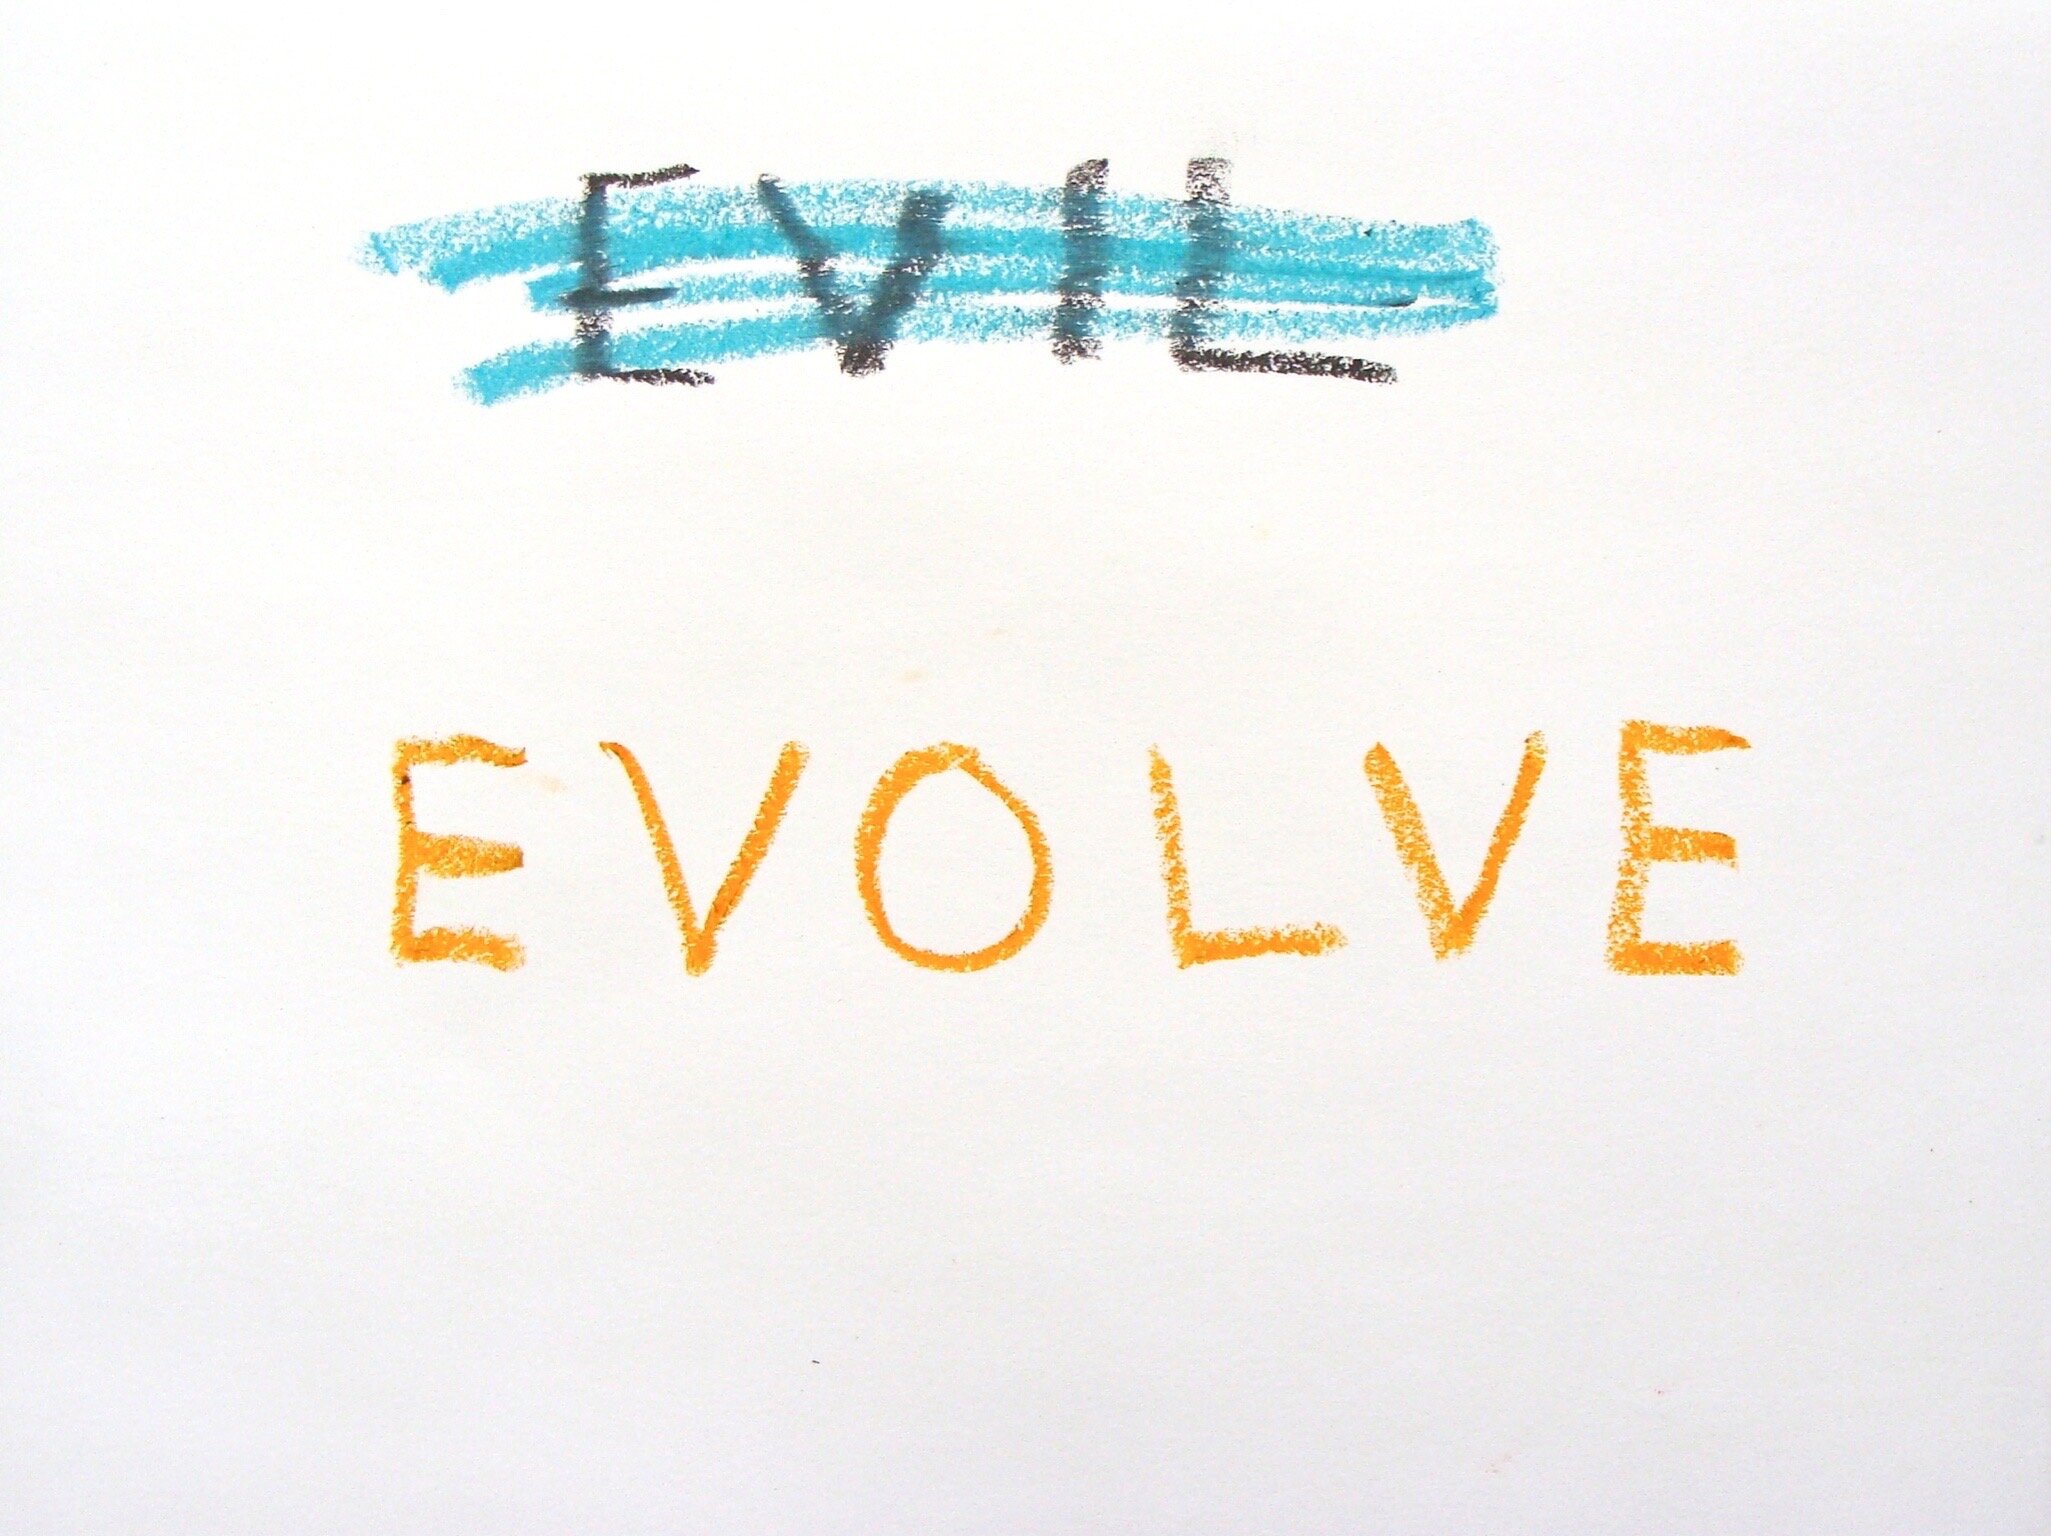 Evil Evolve